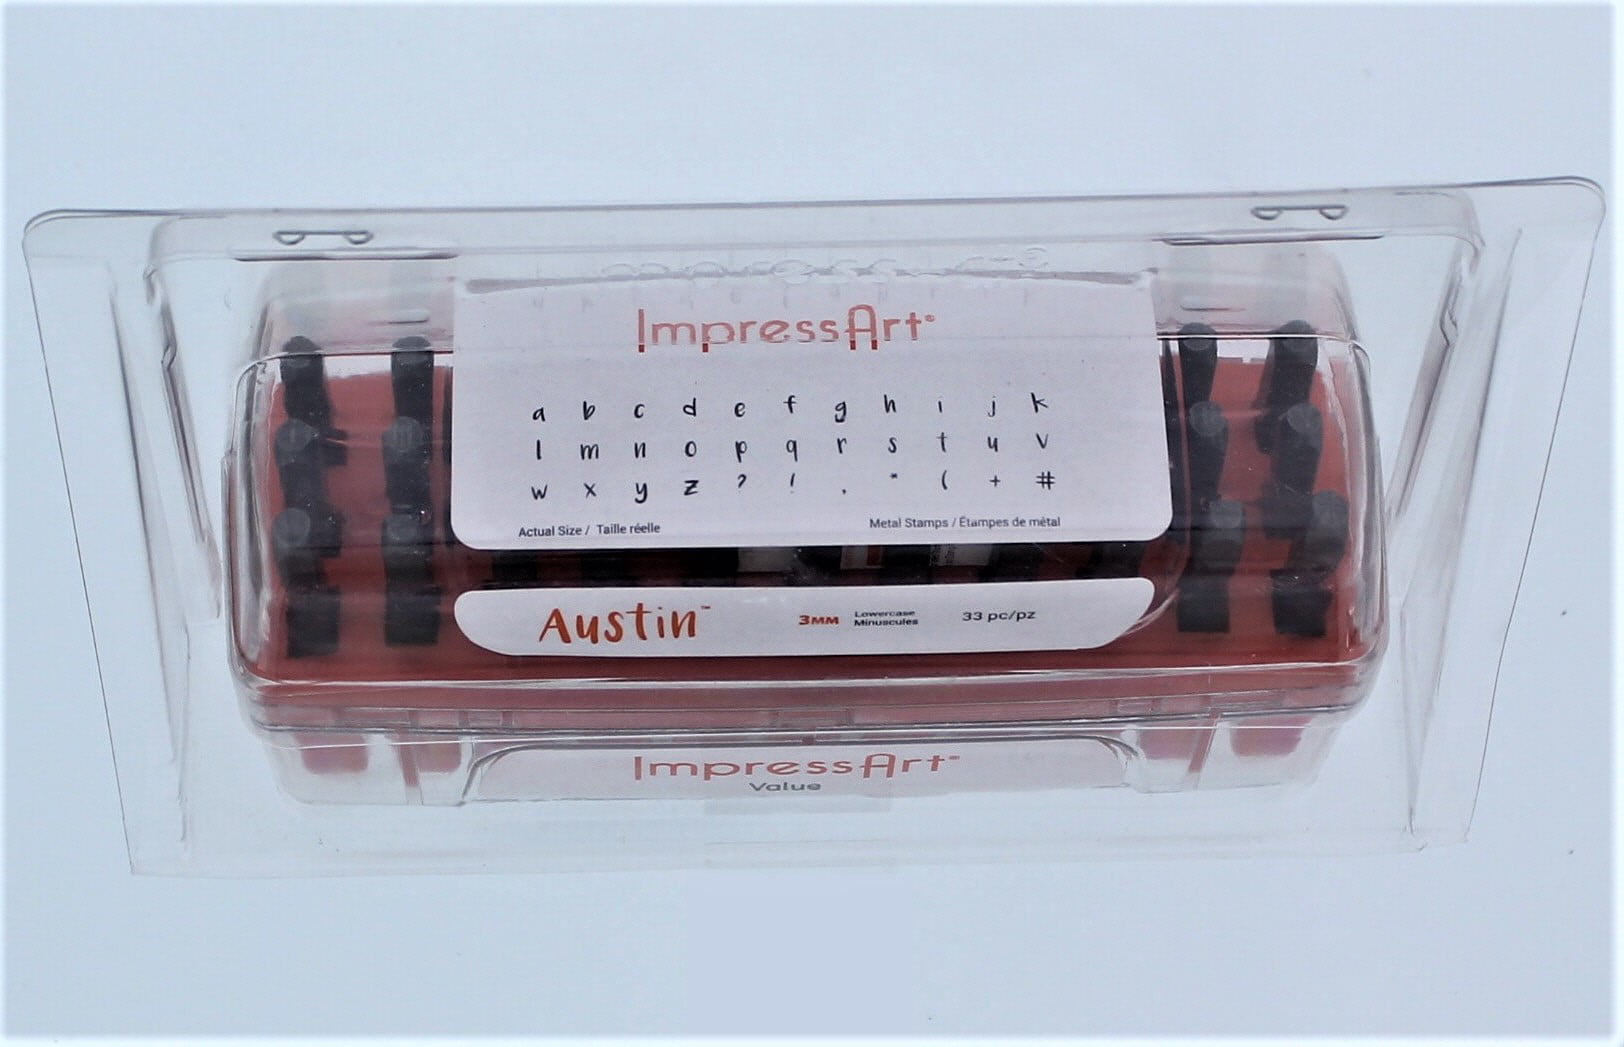 ImpressArt® Juniper Number Metal Stamp Set